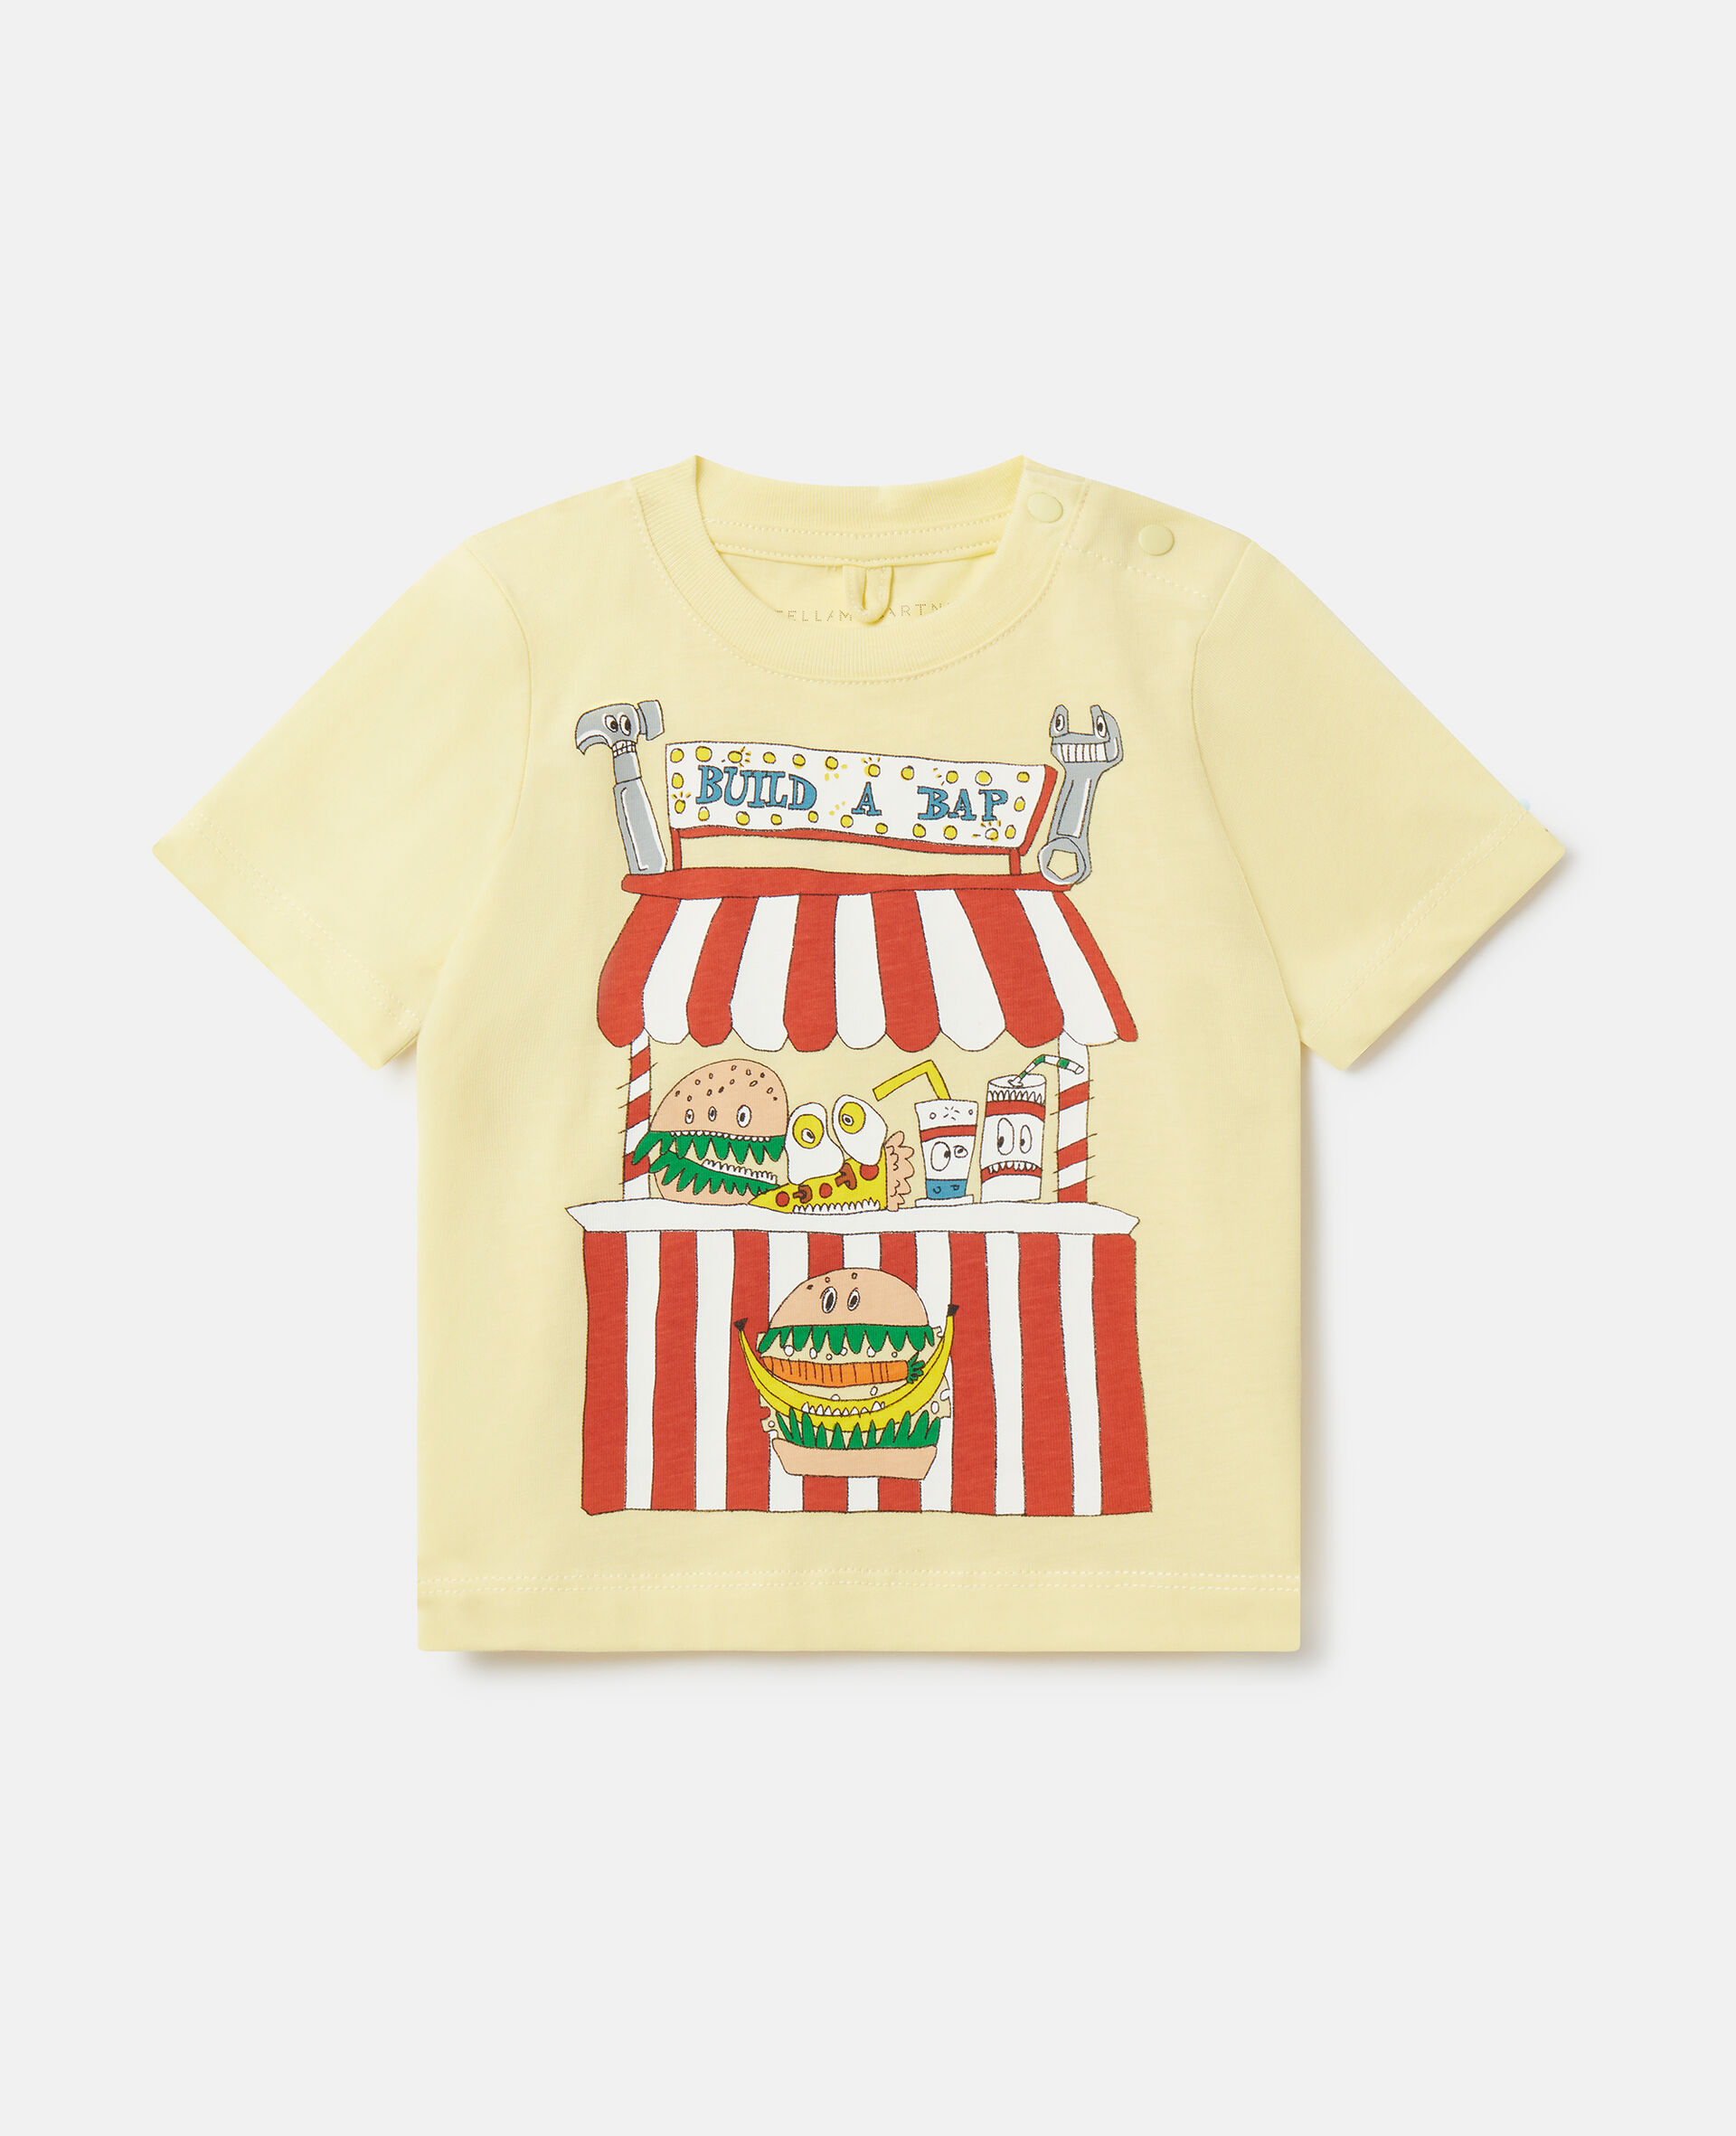 'Build A Bap' Stall T-Shirt-Multicolour-medium